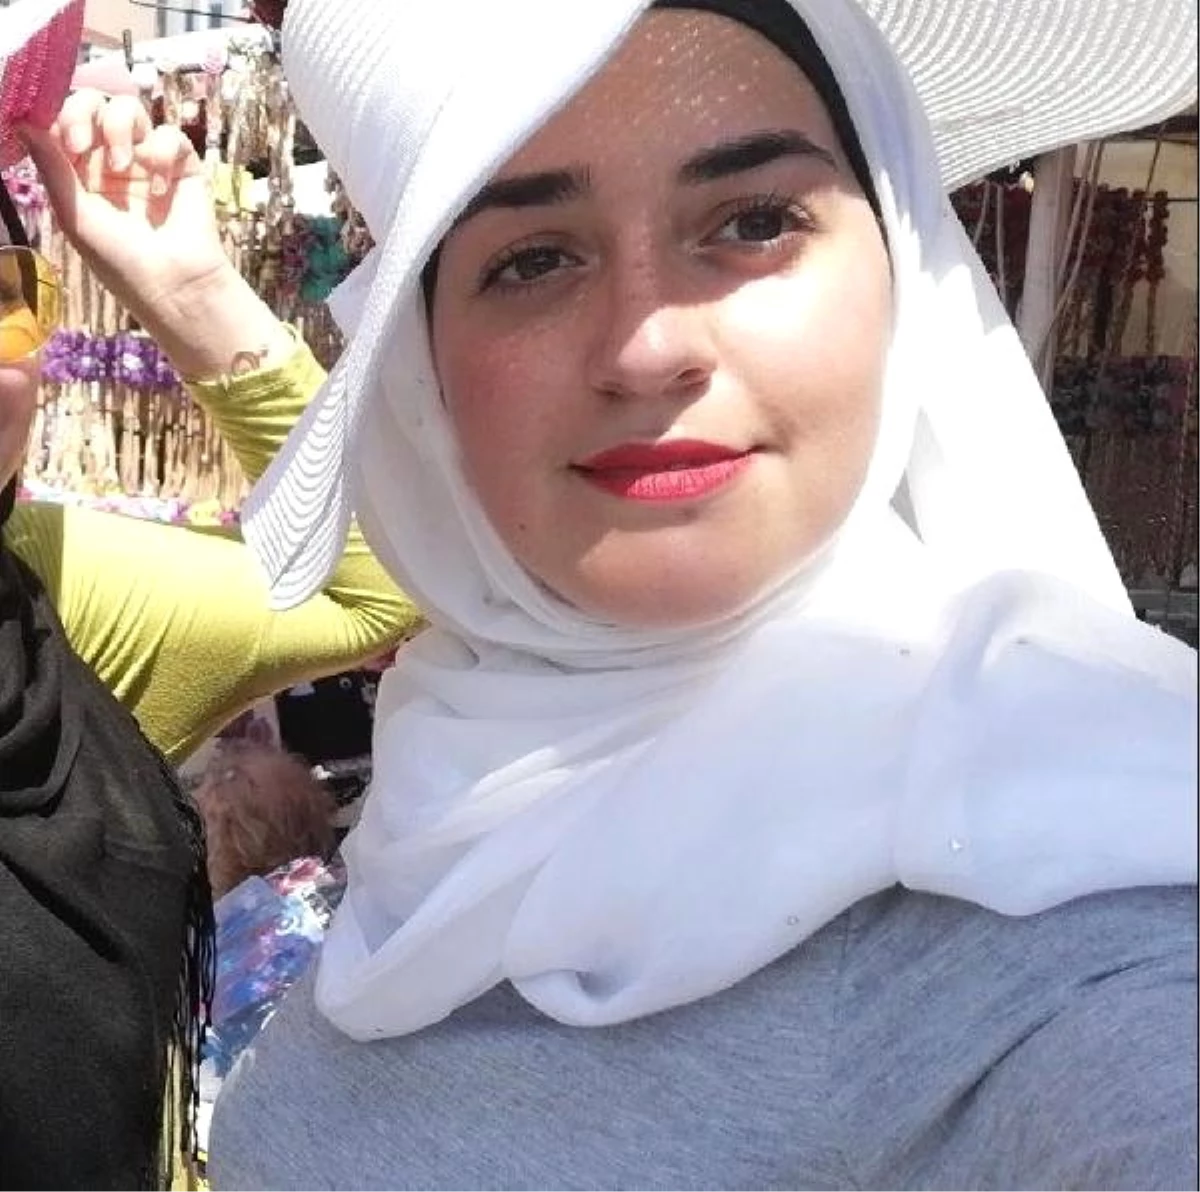 Gaspçılar, Suriyeli Genç Kızı Öldürdü, Arkadaşını İse Ağır Yaraladı